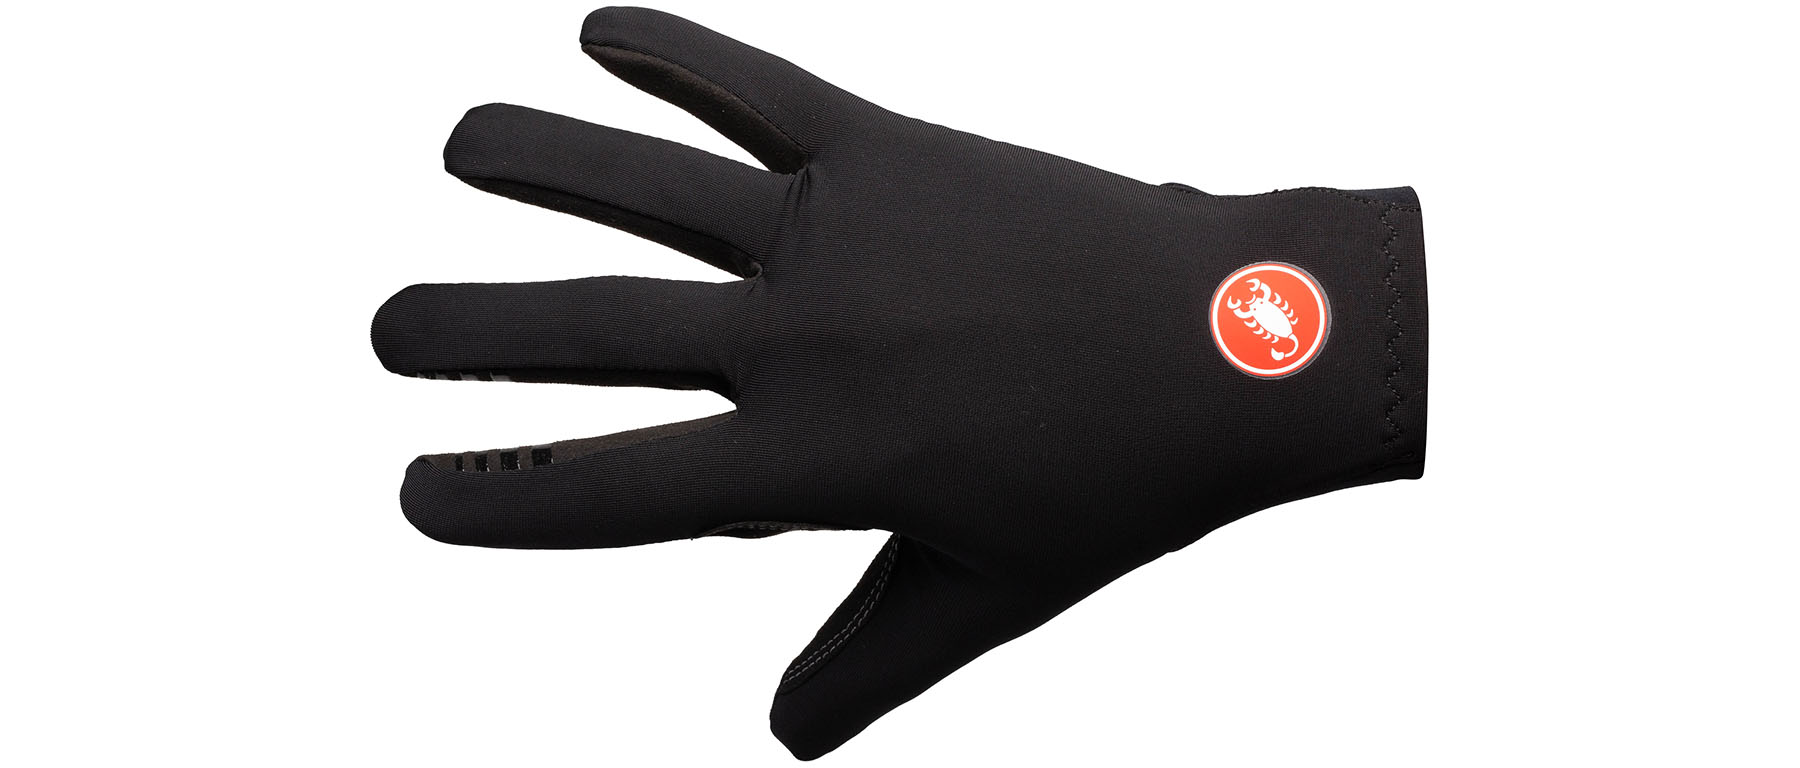 Castelli Lightness 2 Gloves